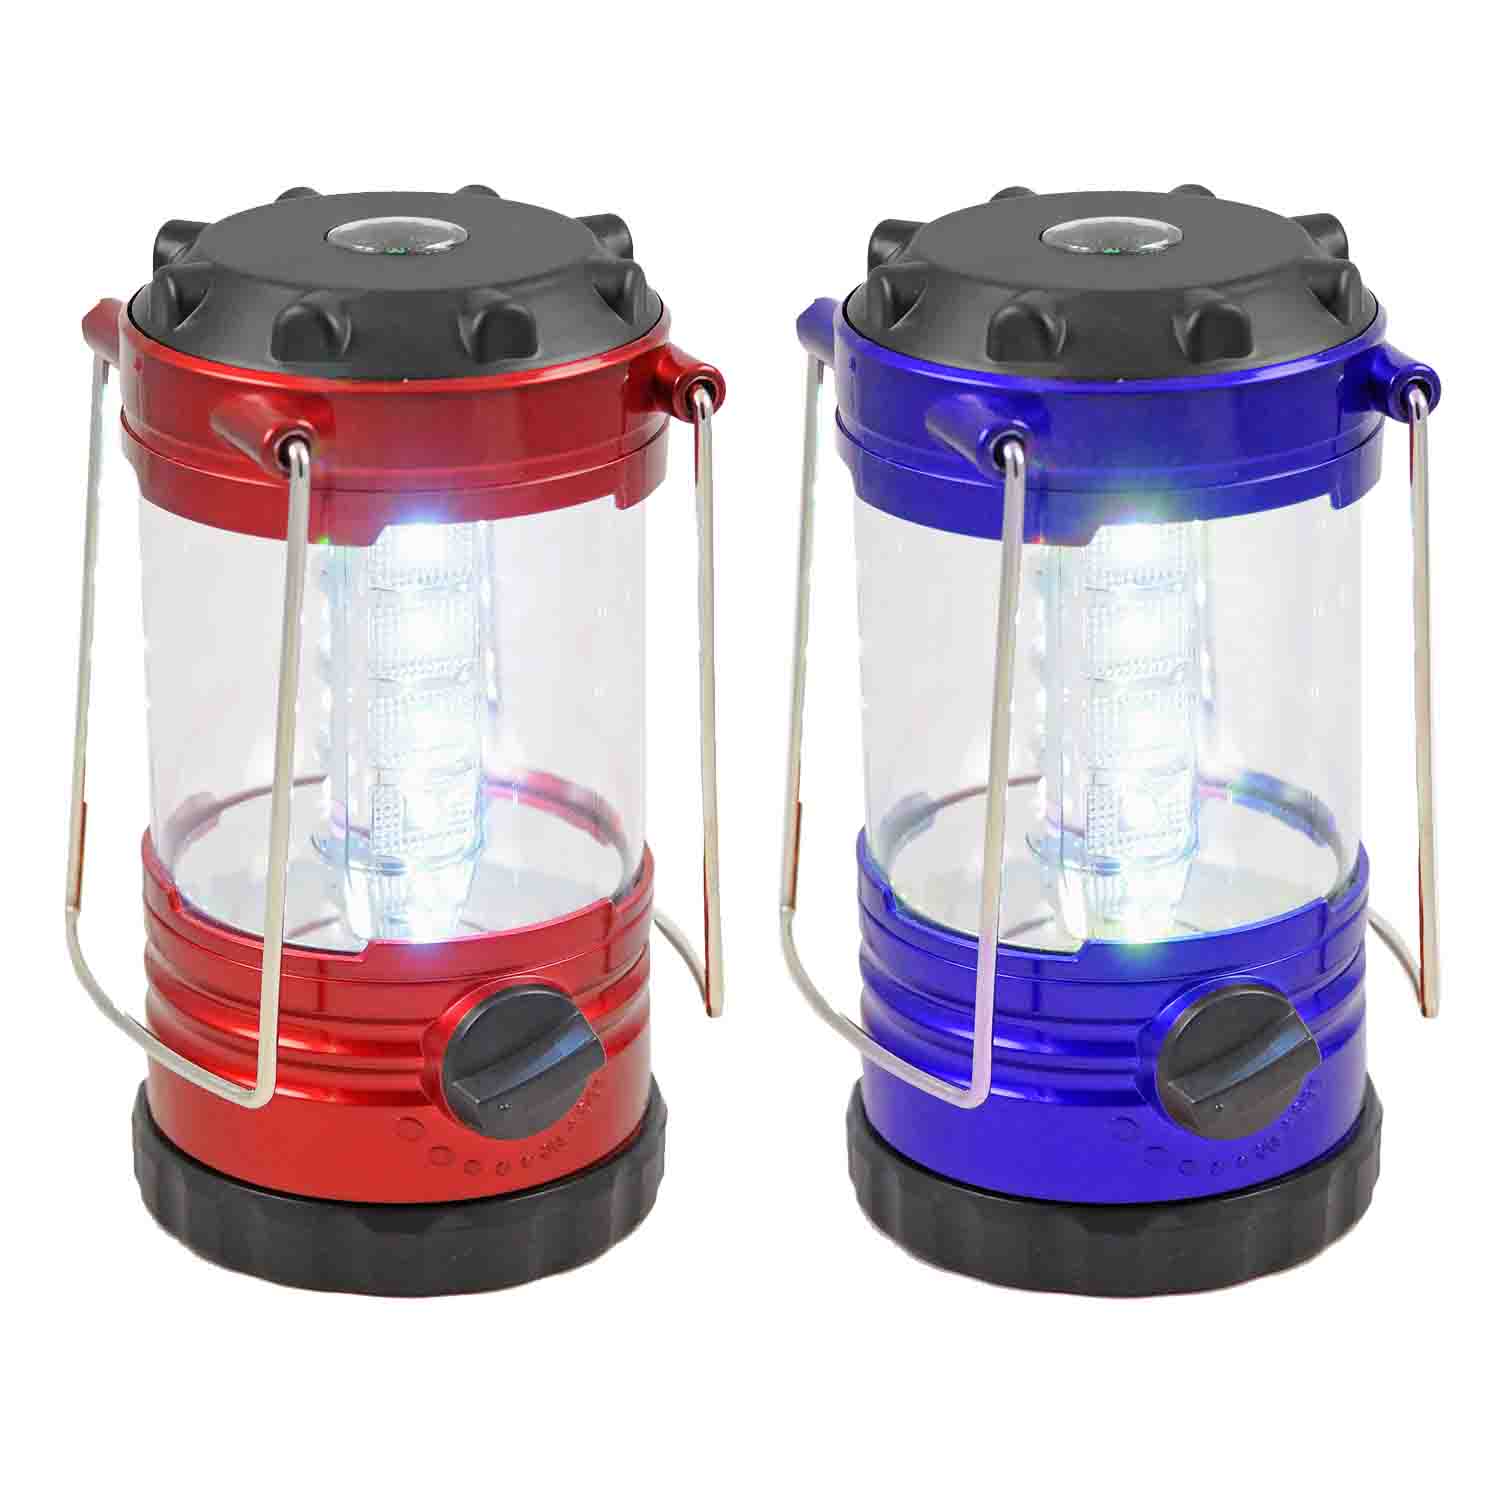 Shawshank LEDz - All Products - 12 LED Camping Lantern